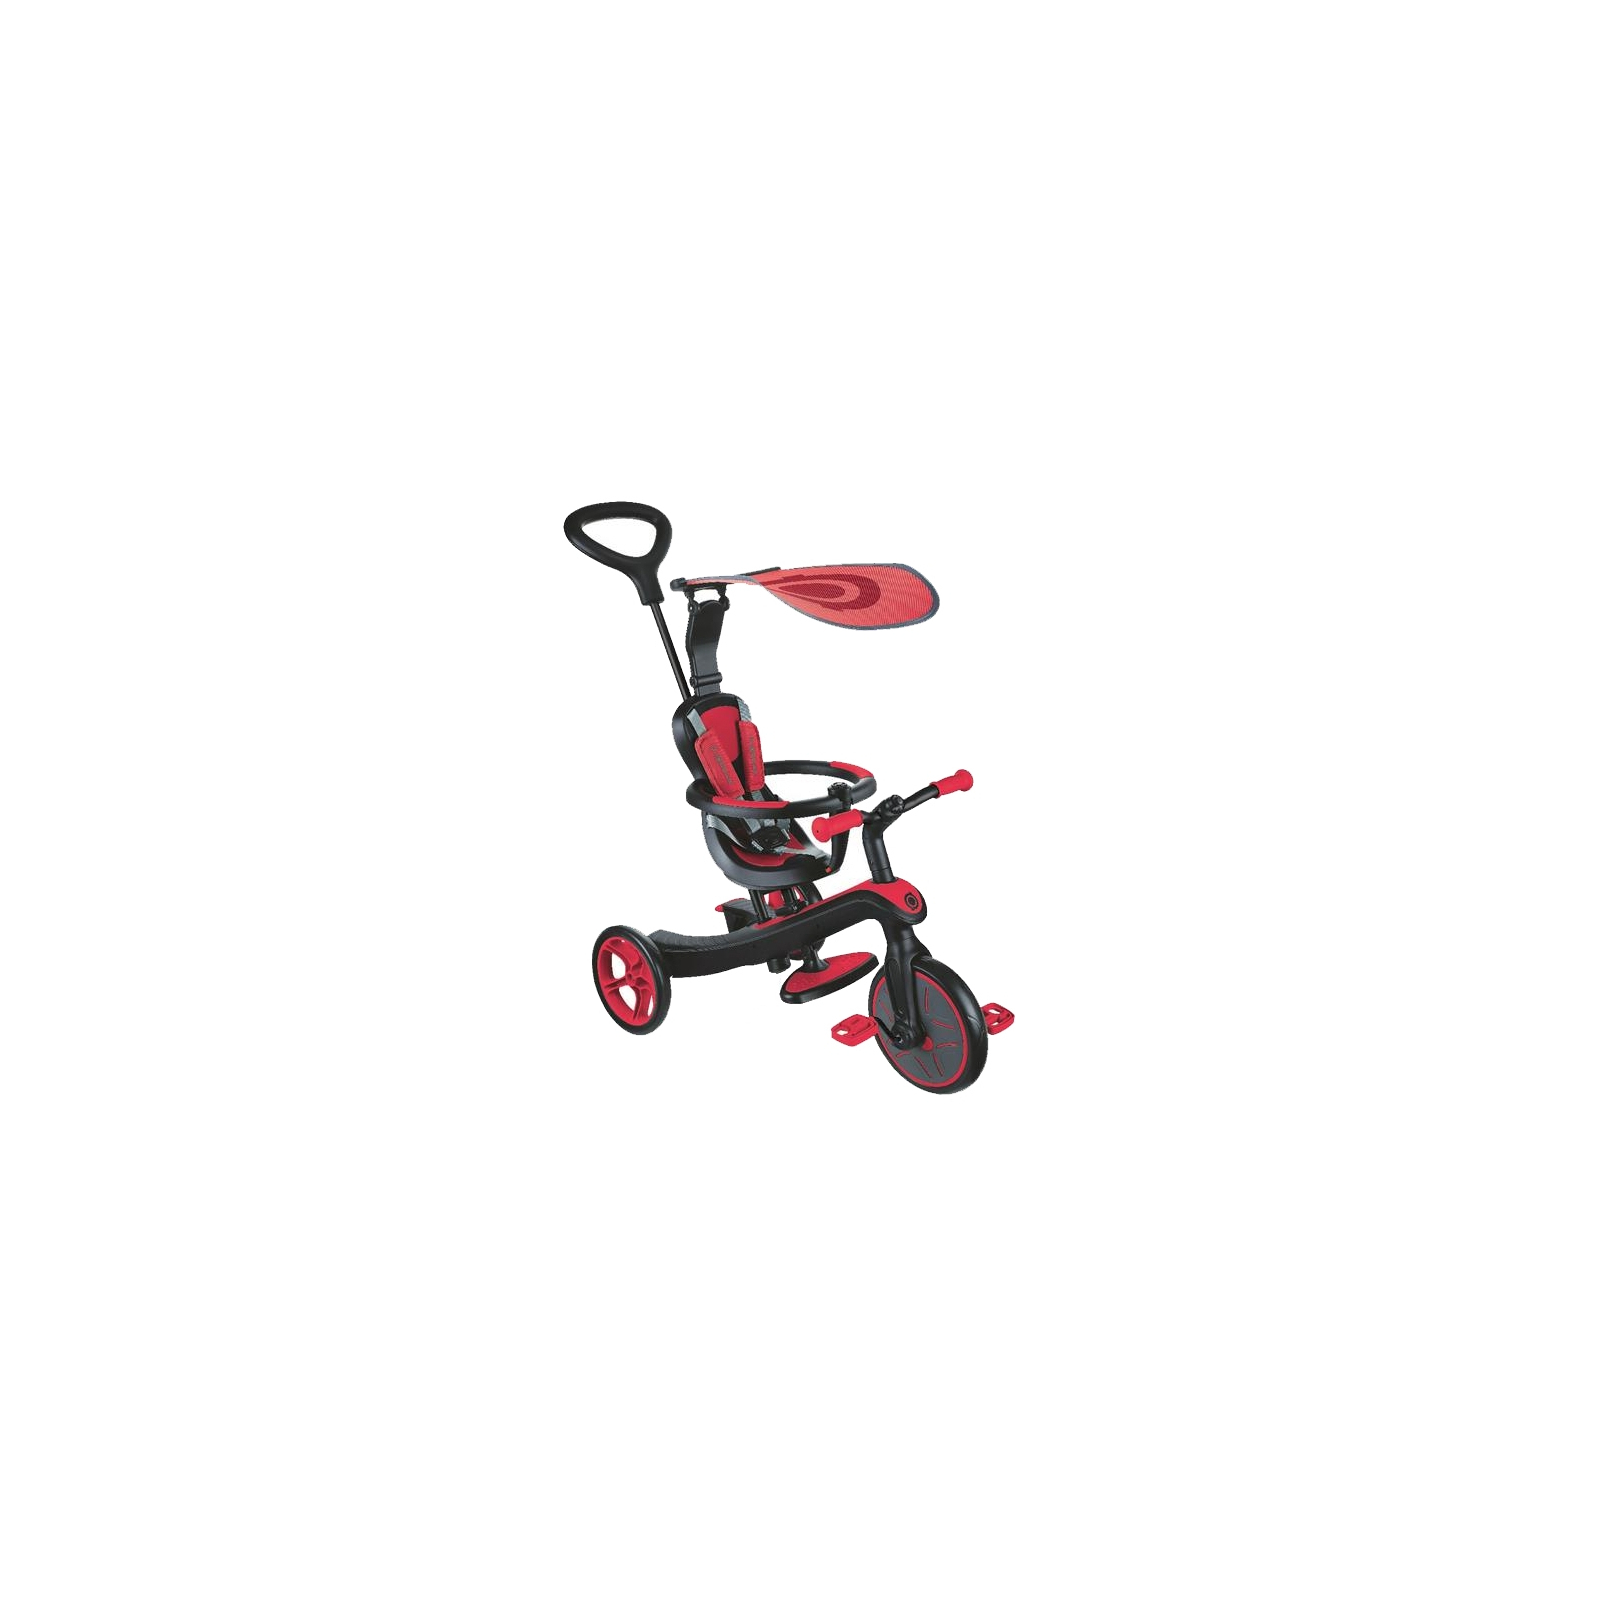 Детский велосипед Globber EXPLORER TRIKE 4в1 красный (632-102)